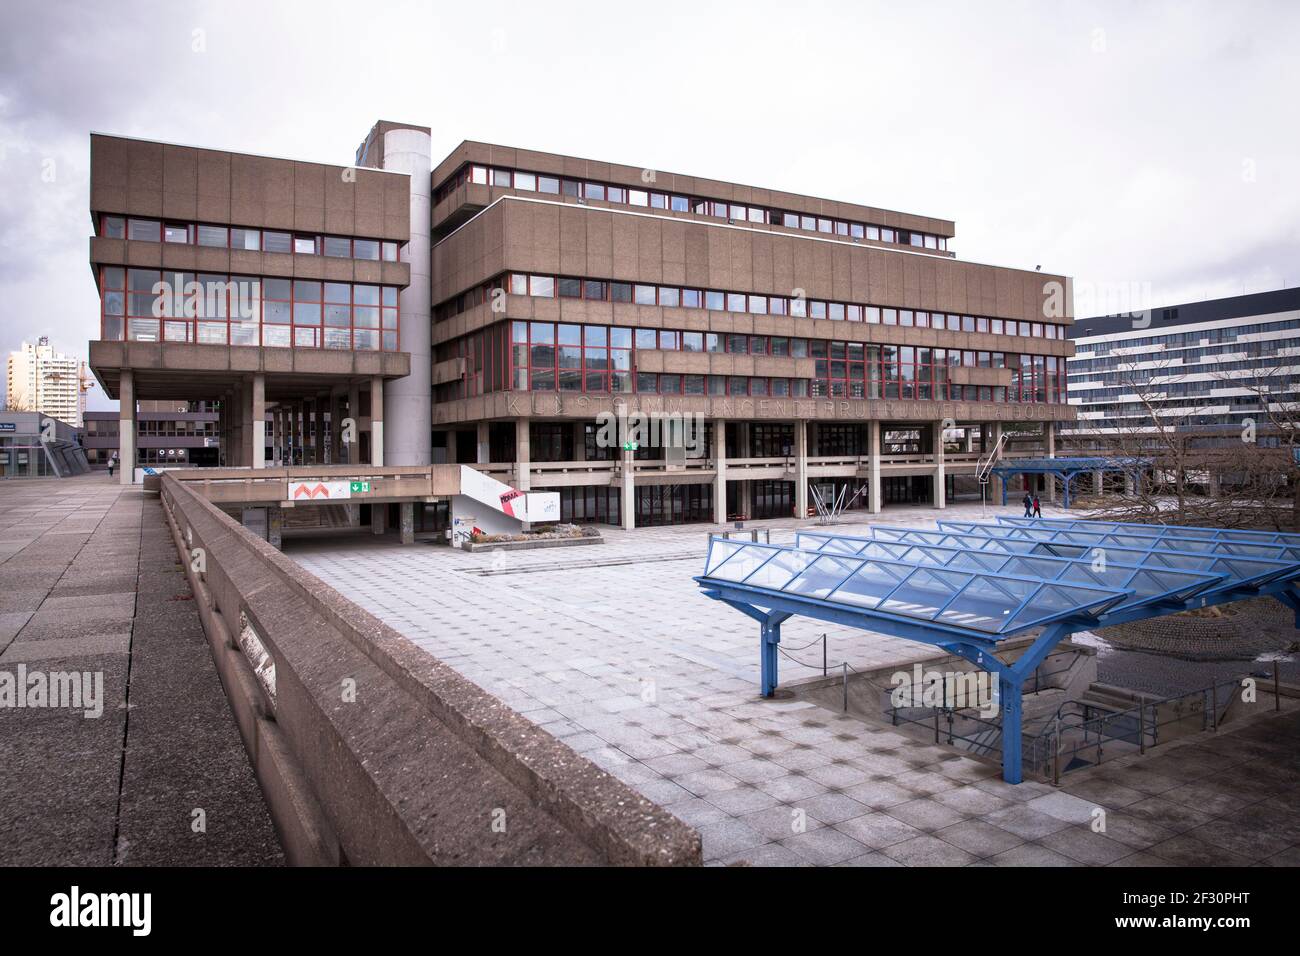 Ruhr Universidad Bochum, plaza frente a la Biblioteca Central, casi ningún estudiante en el campus durante la pandemia de Corona, Bochum, Renania del Norte-Westfalia Foto de stock